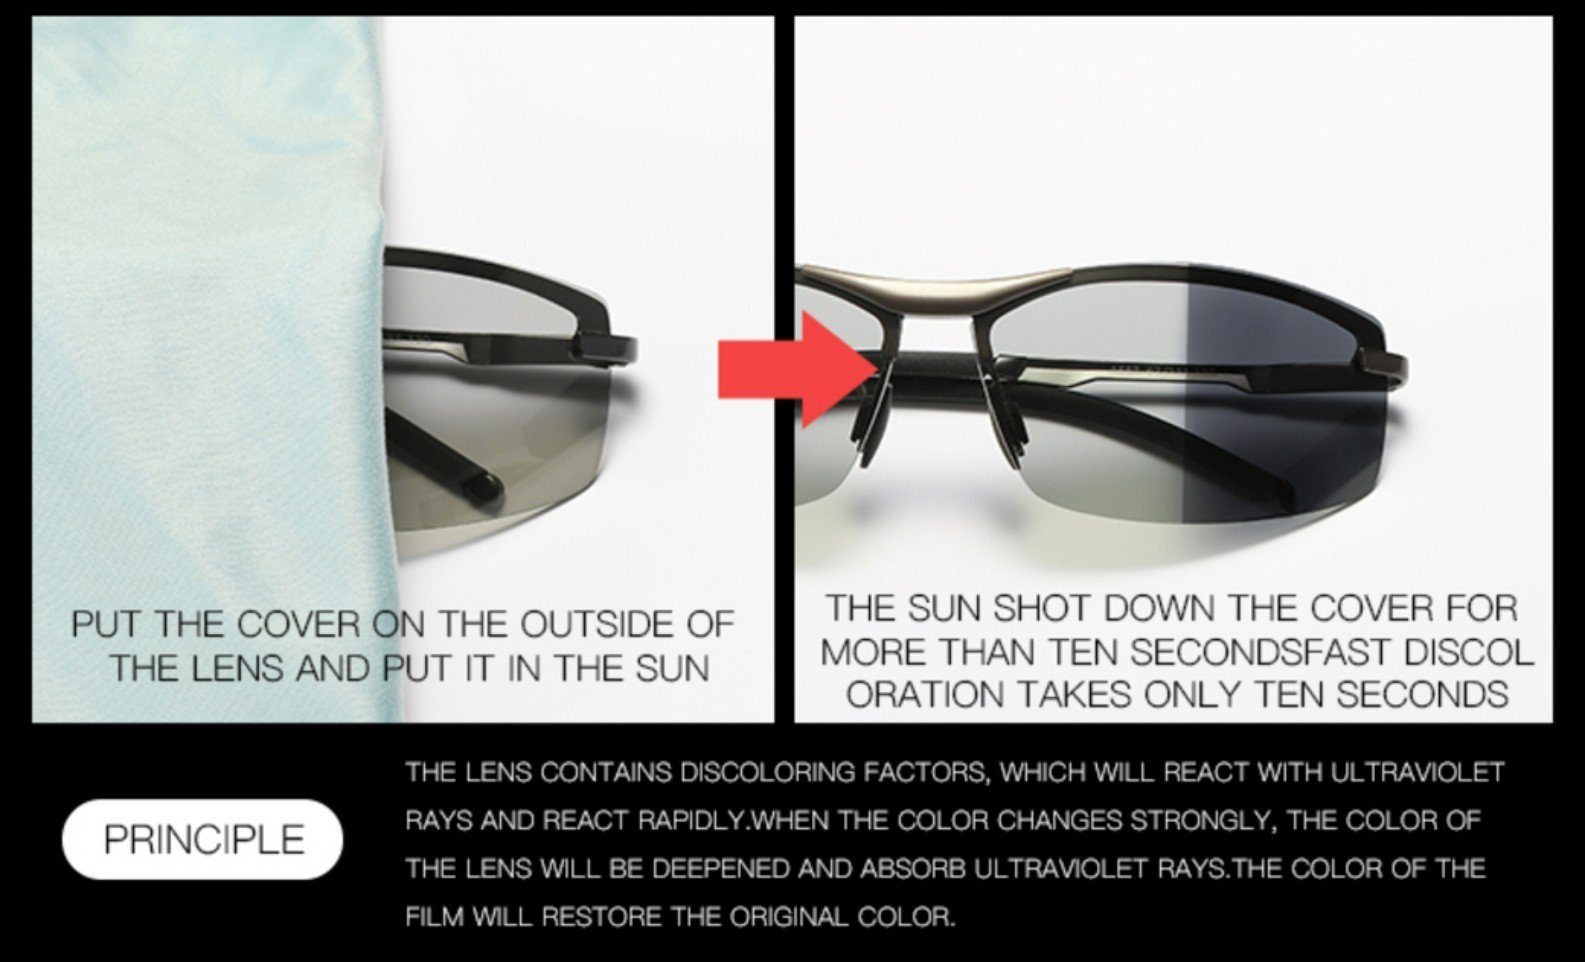 PACIEA Sonnenbrille Sonnenbrille Sportbrille Herren Schutz UV400 polarisiert Leicht braun 100